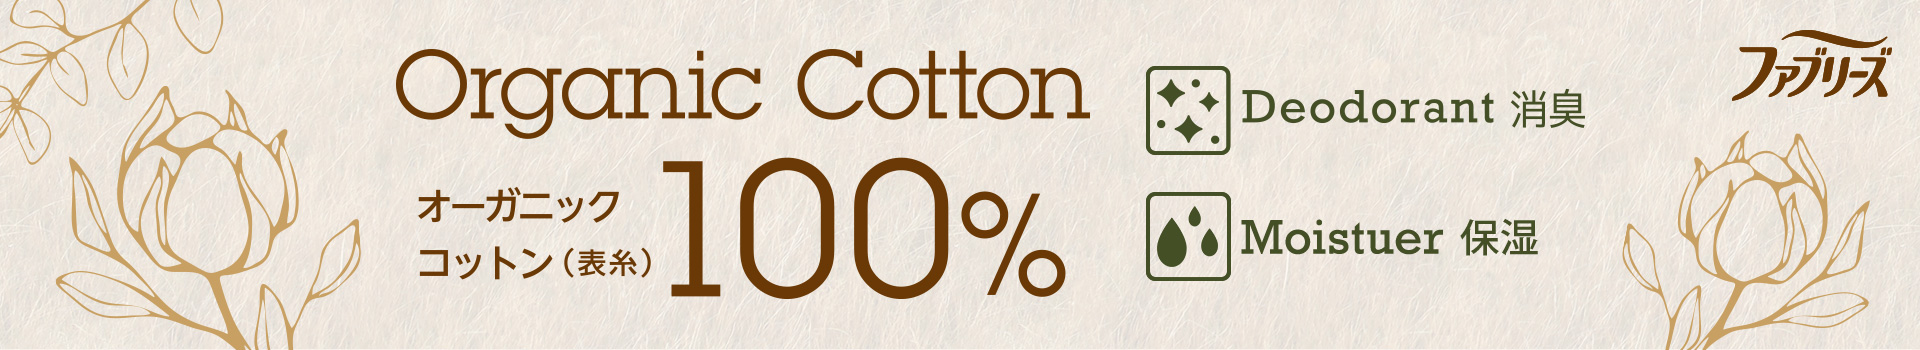 Organic Cotton 100%